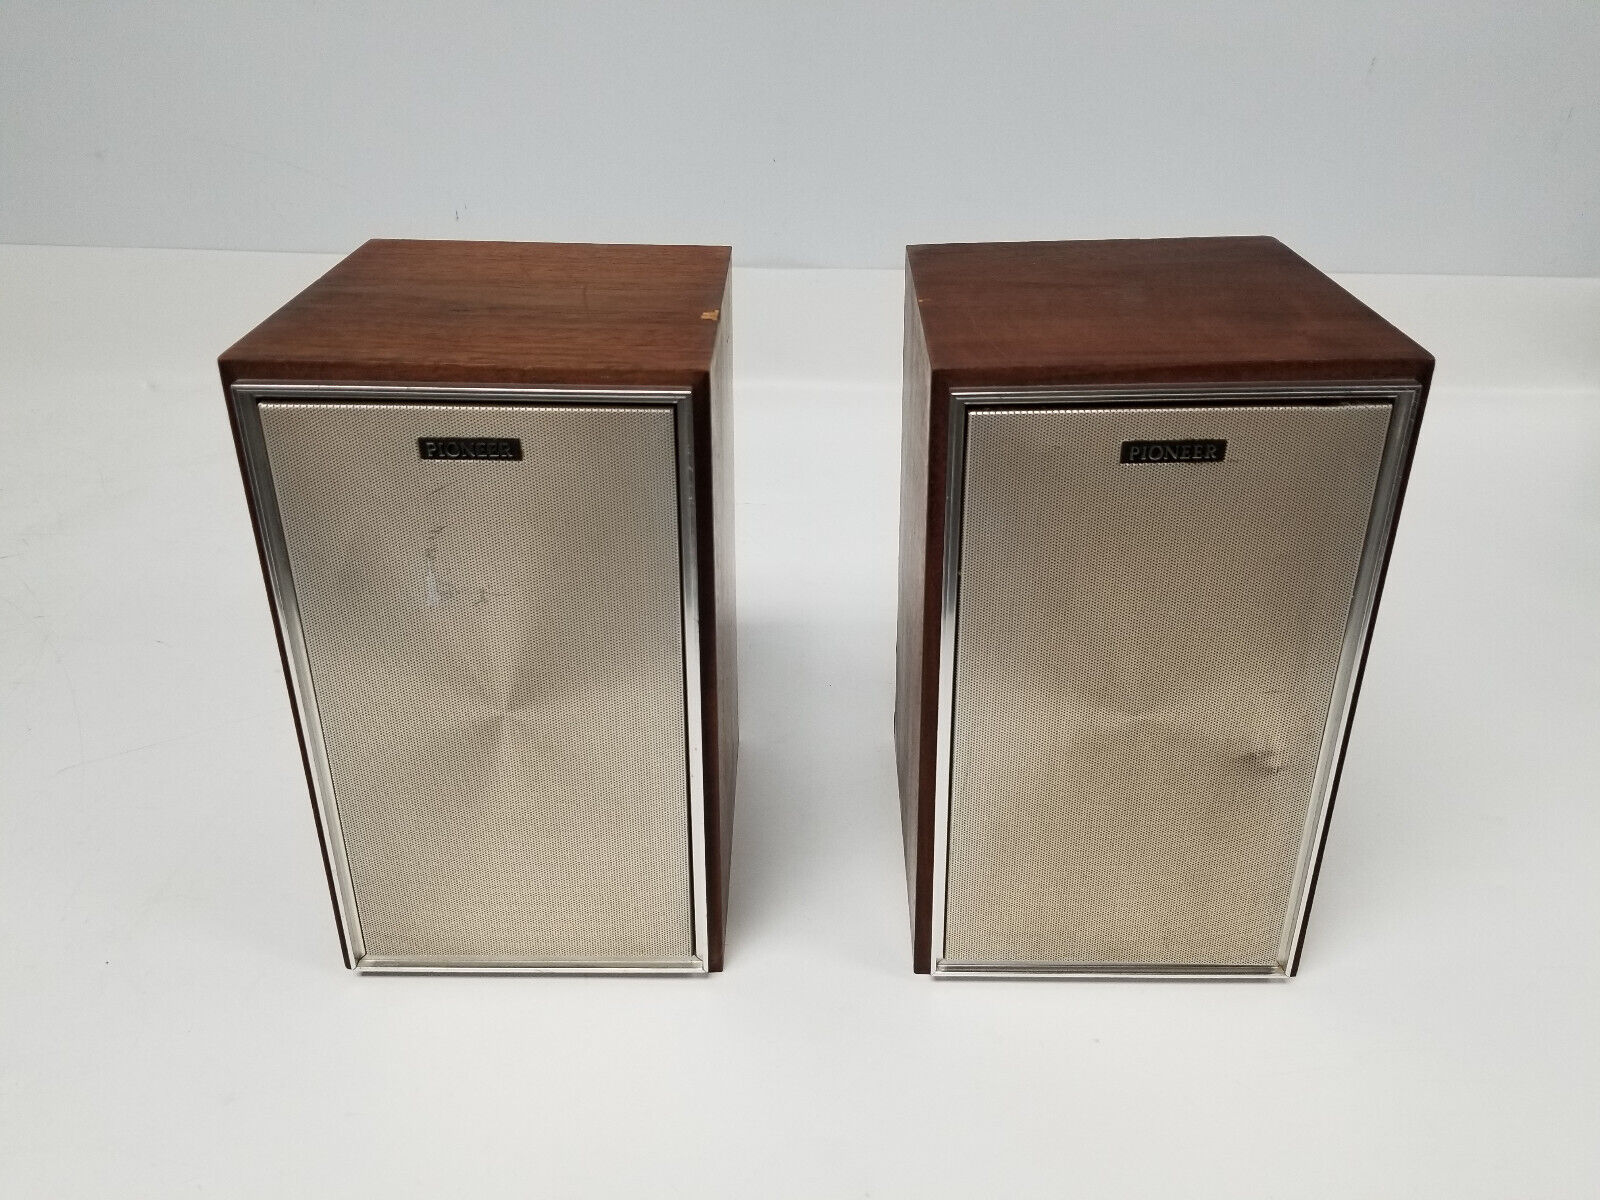 Vintage Lot of 2 Pioneer CS-51 Speakers (Tested)